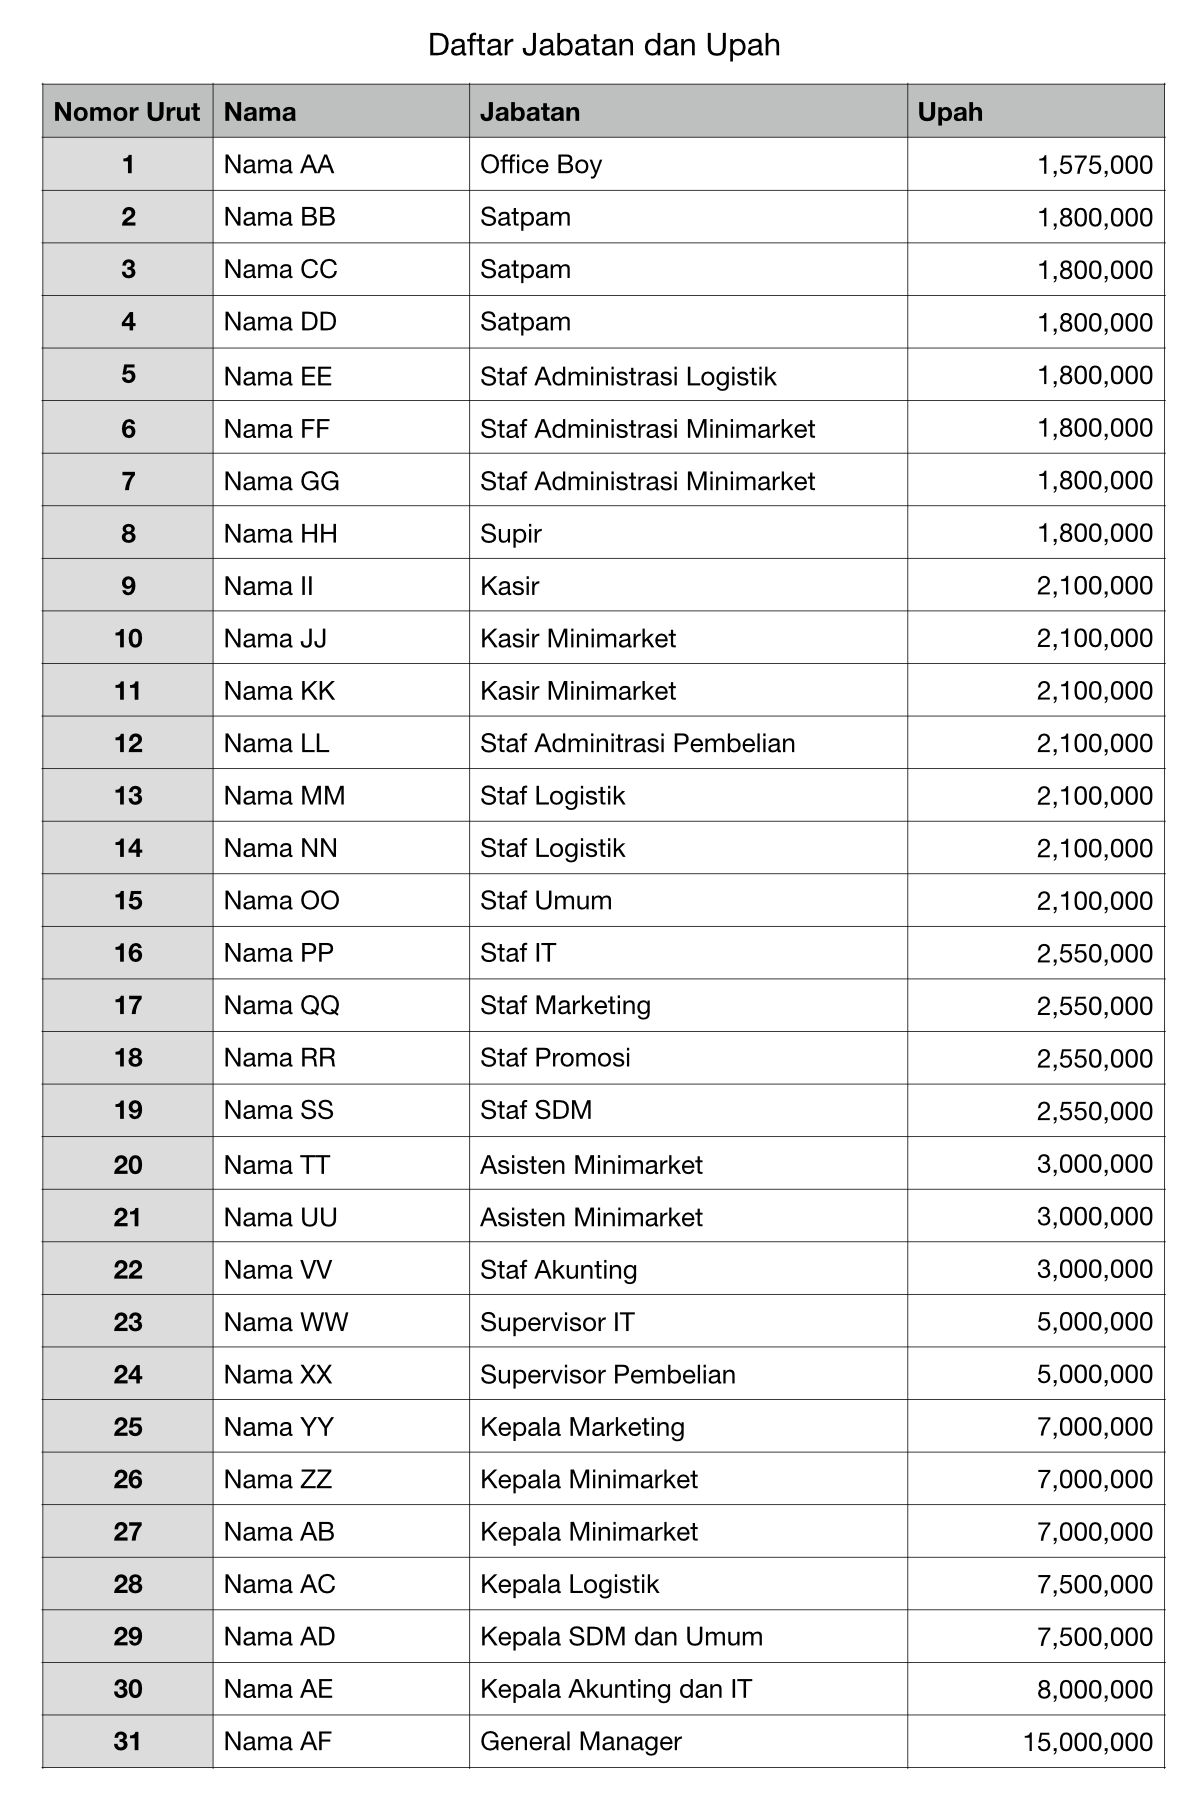 Tabel Daftar Jabatan dan Upah